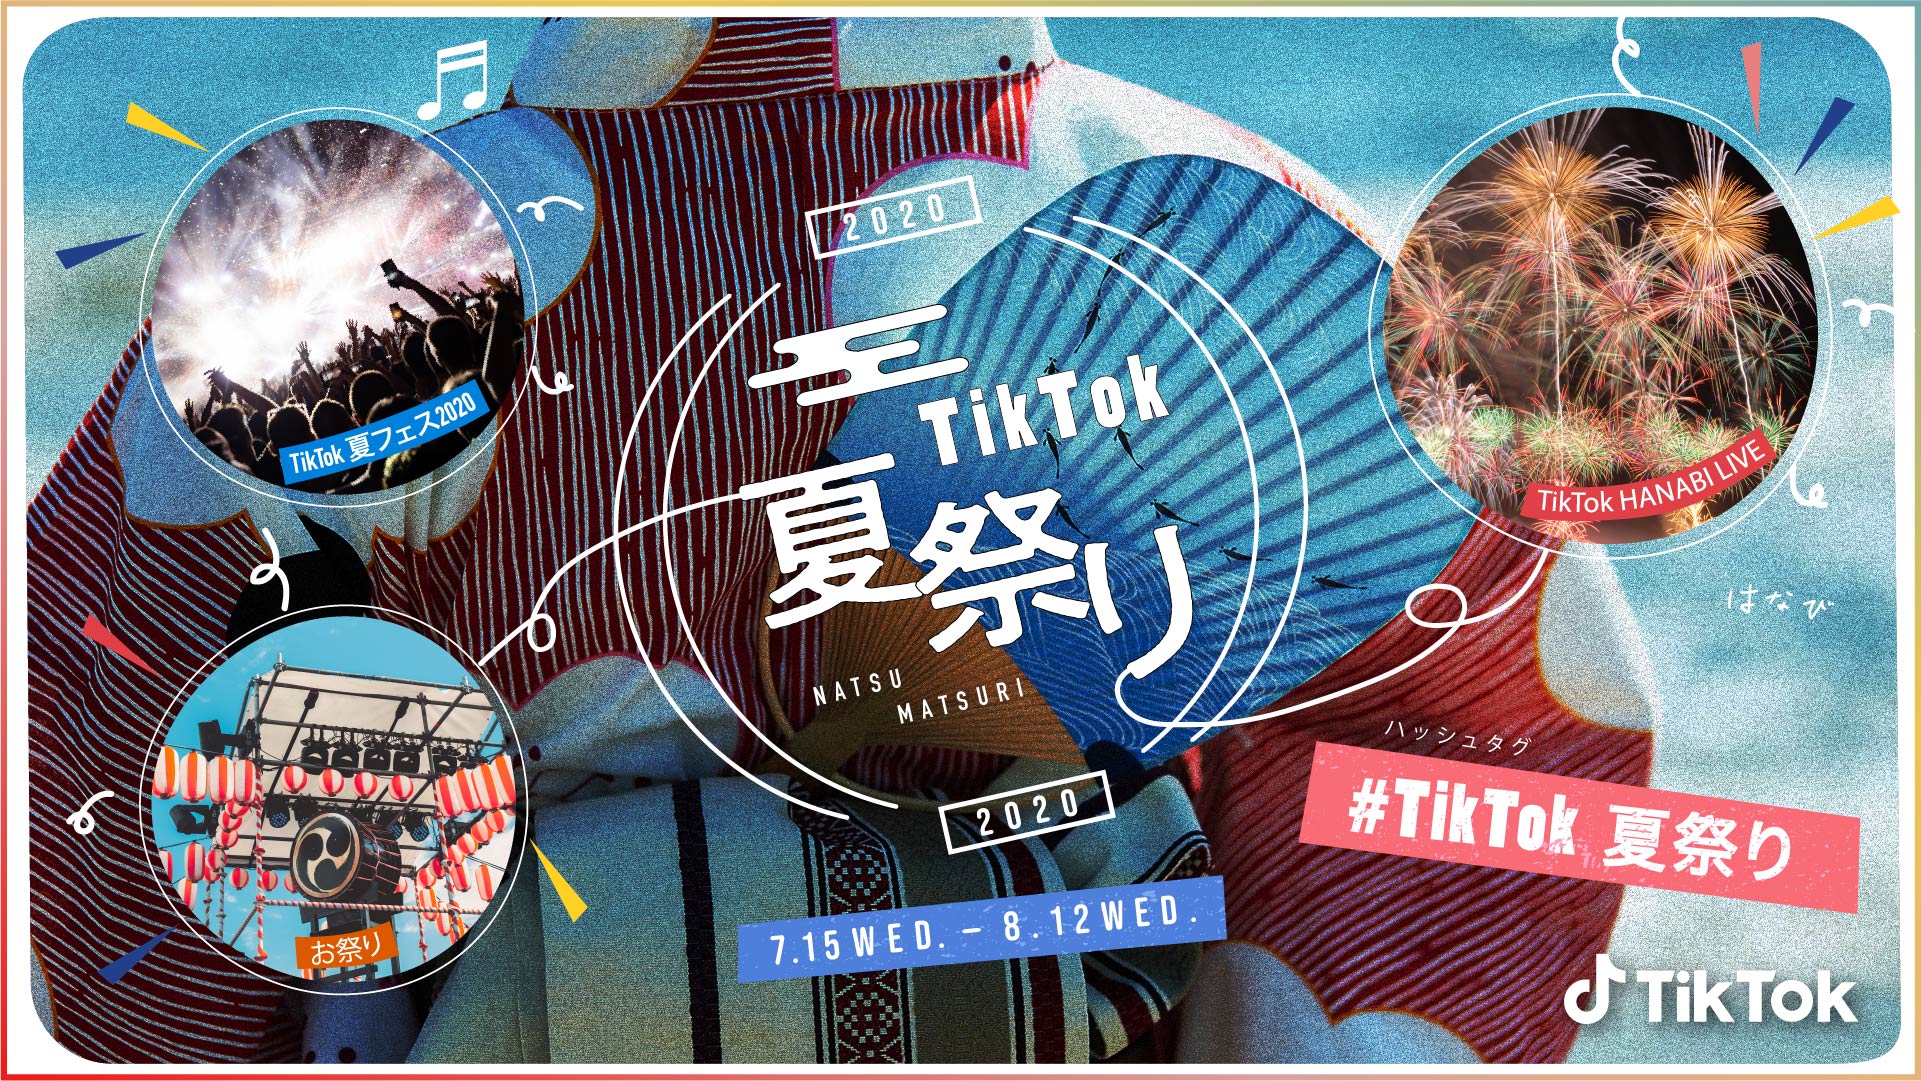 Tiktok夏祭り 今年も開催 今年は夏フェスと花火をtiktok Liveで配信 Tiktok ニュースルーム